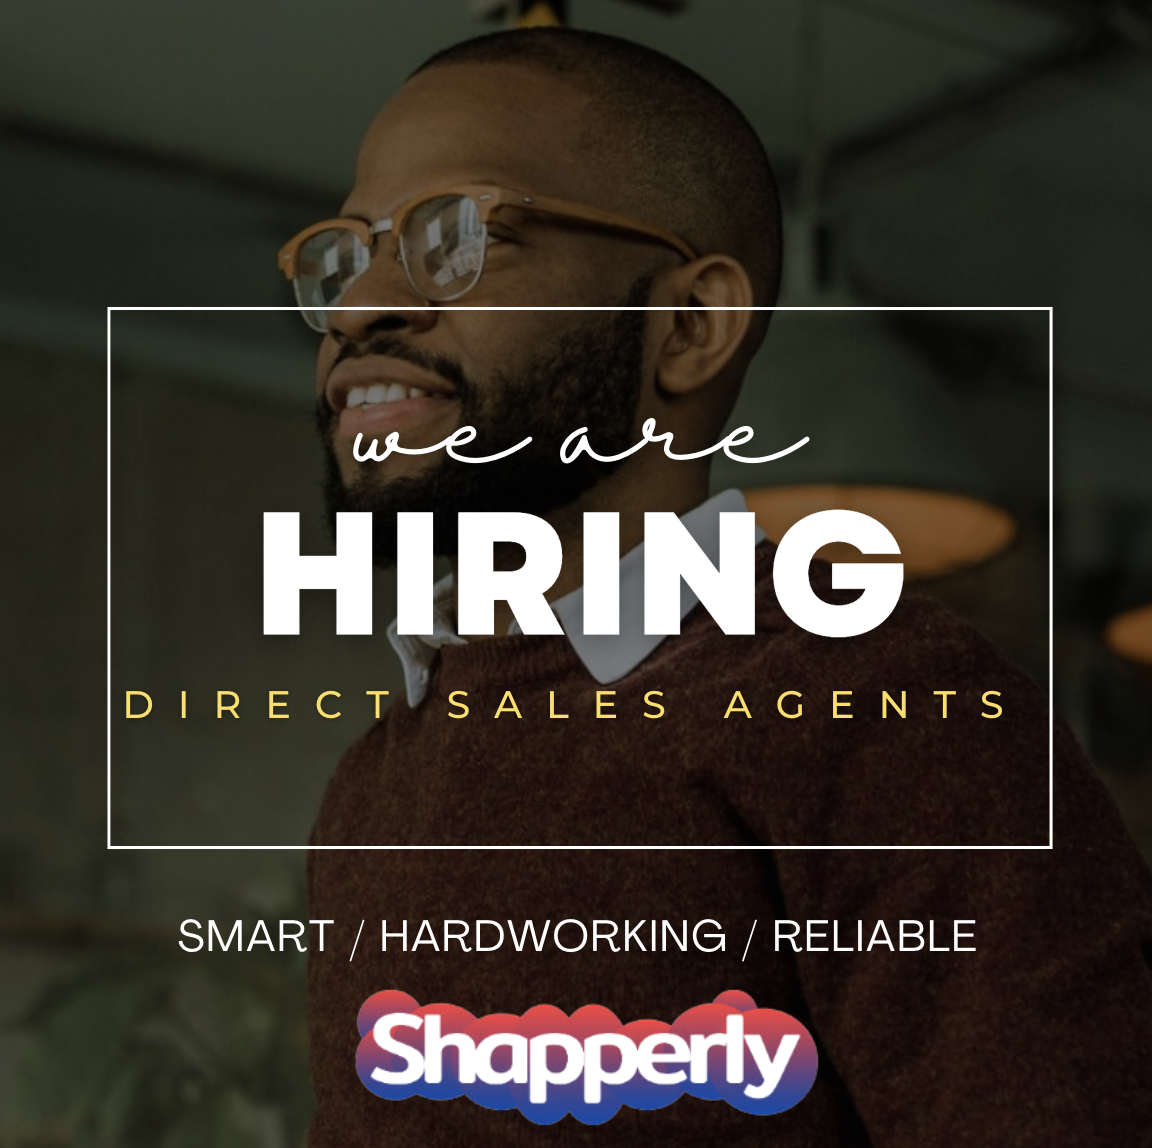 Vacancy:- Direct Sales Agents